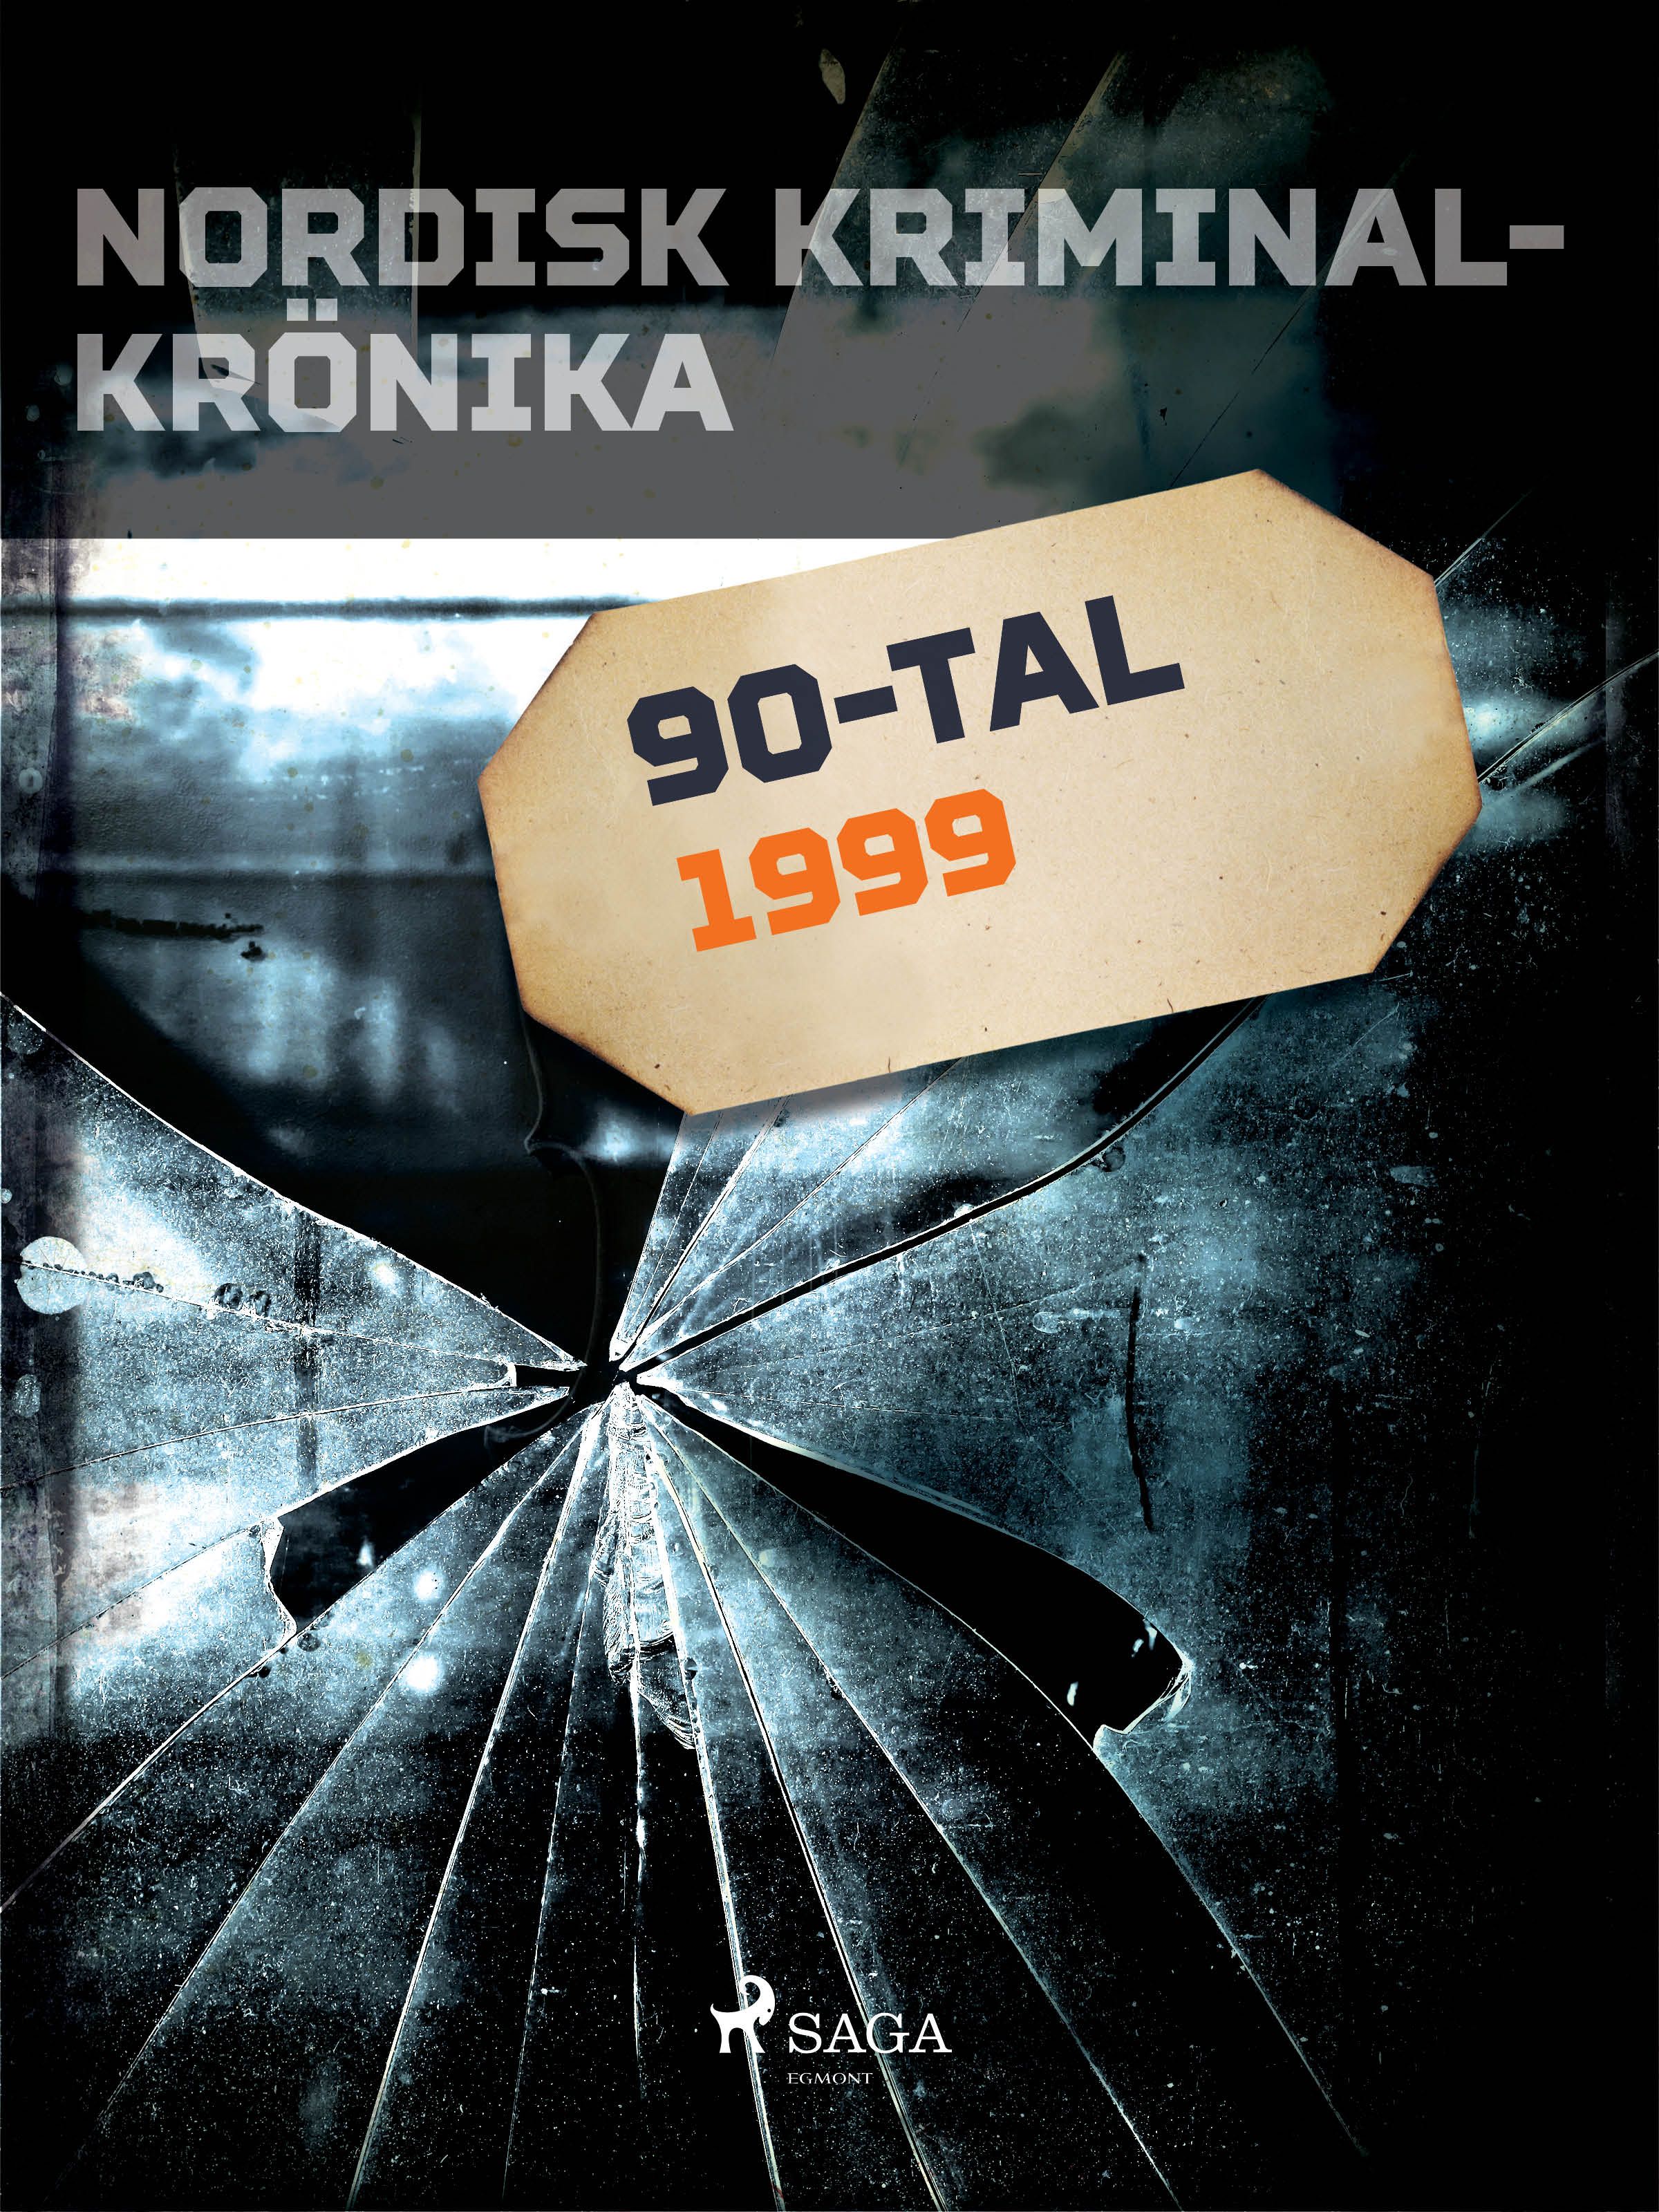 Nordisk kriminalkrönika 1999, eBook by Diverse